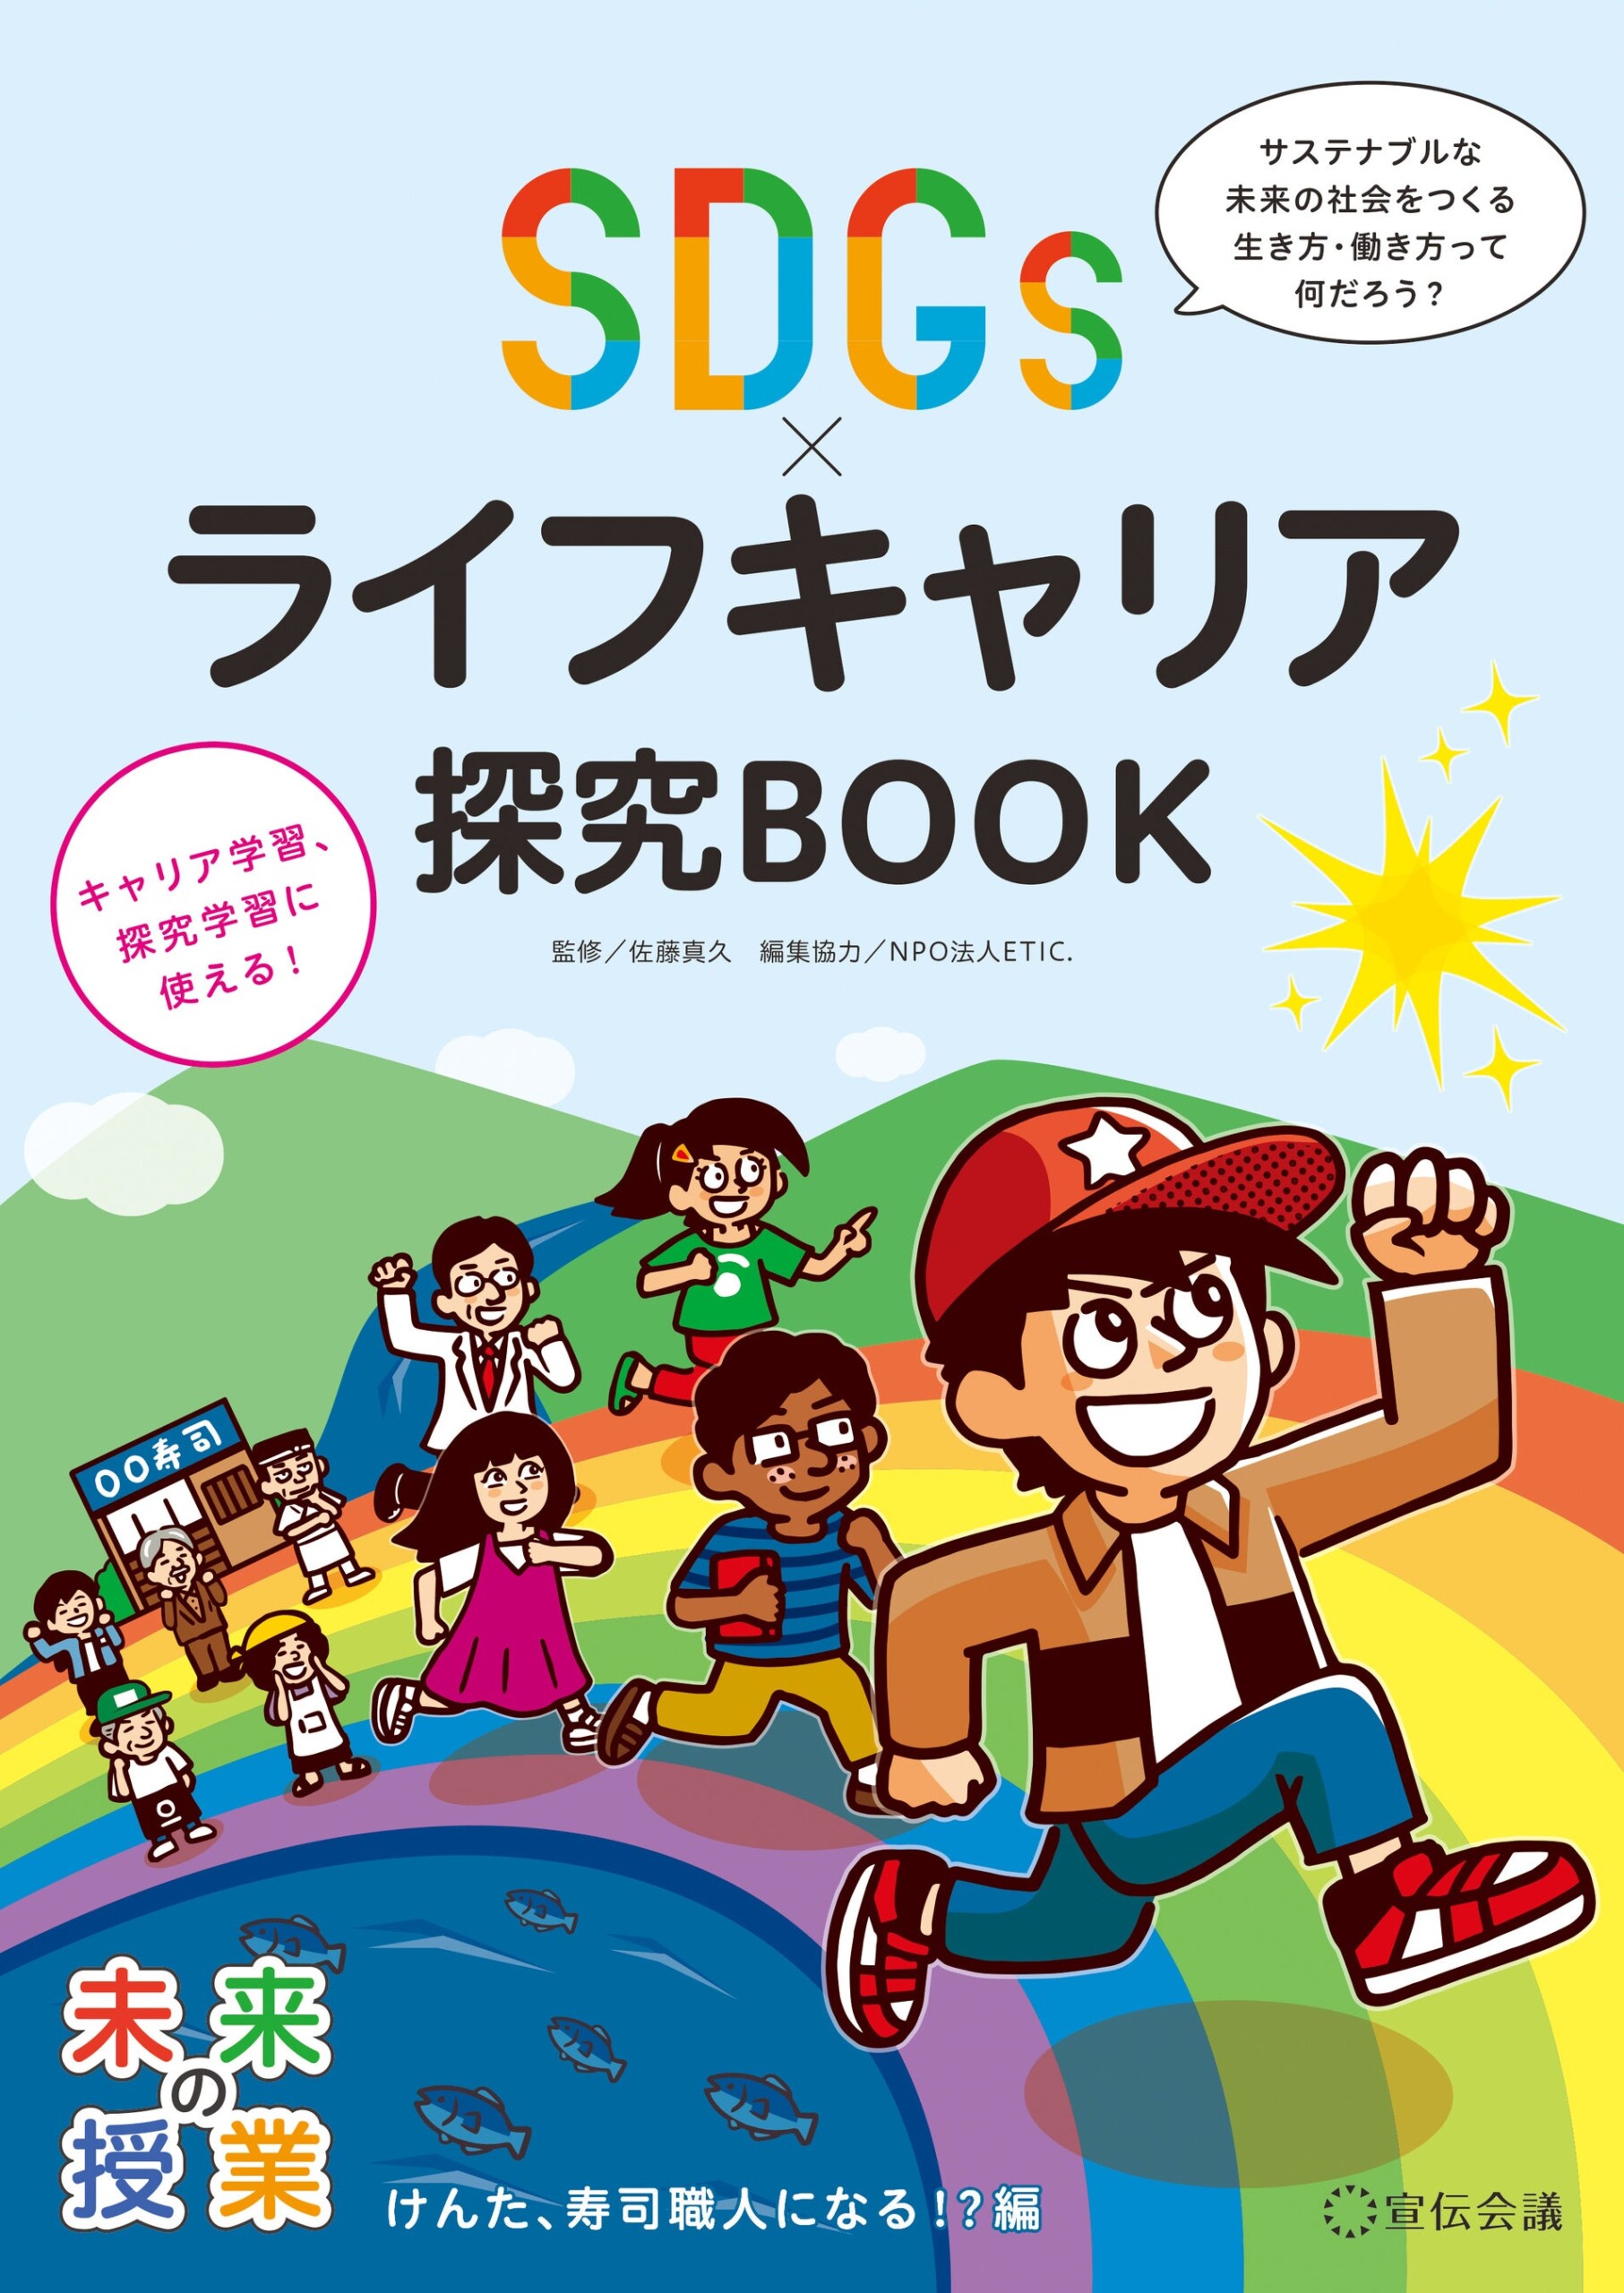 【新刊書籍のご案内】『未来の授業 SDGs×ライフキャリア探究BOOK』発売